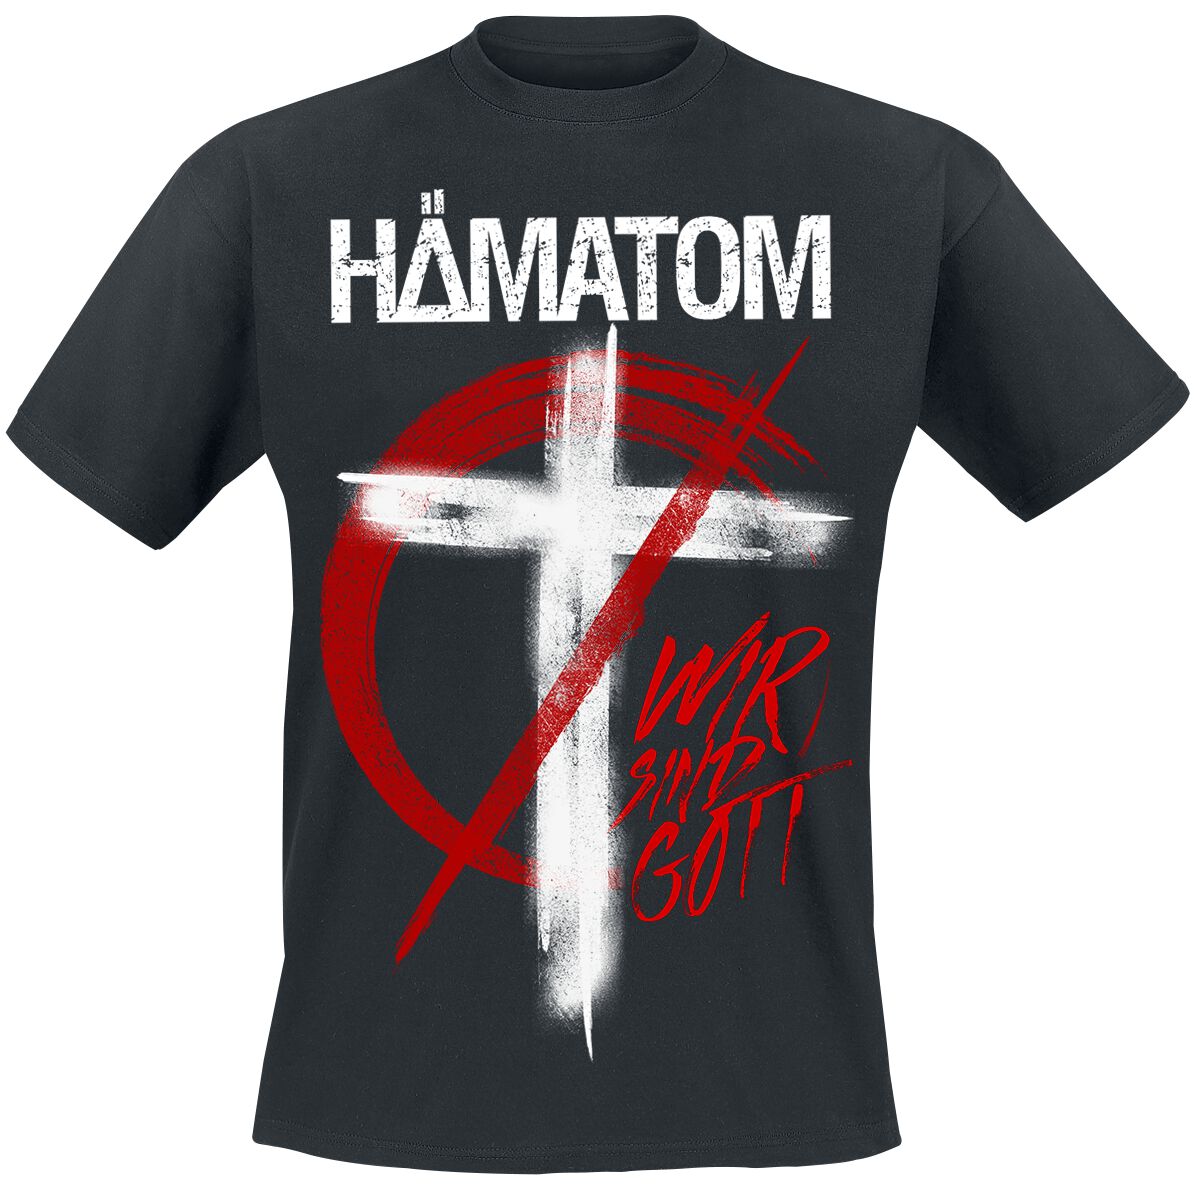 Hämatom T-Shirt - Wir sind Gott - S - für Männer - Größe S - schwarz  - Lizenziertes Merchandise!